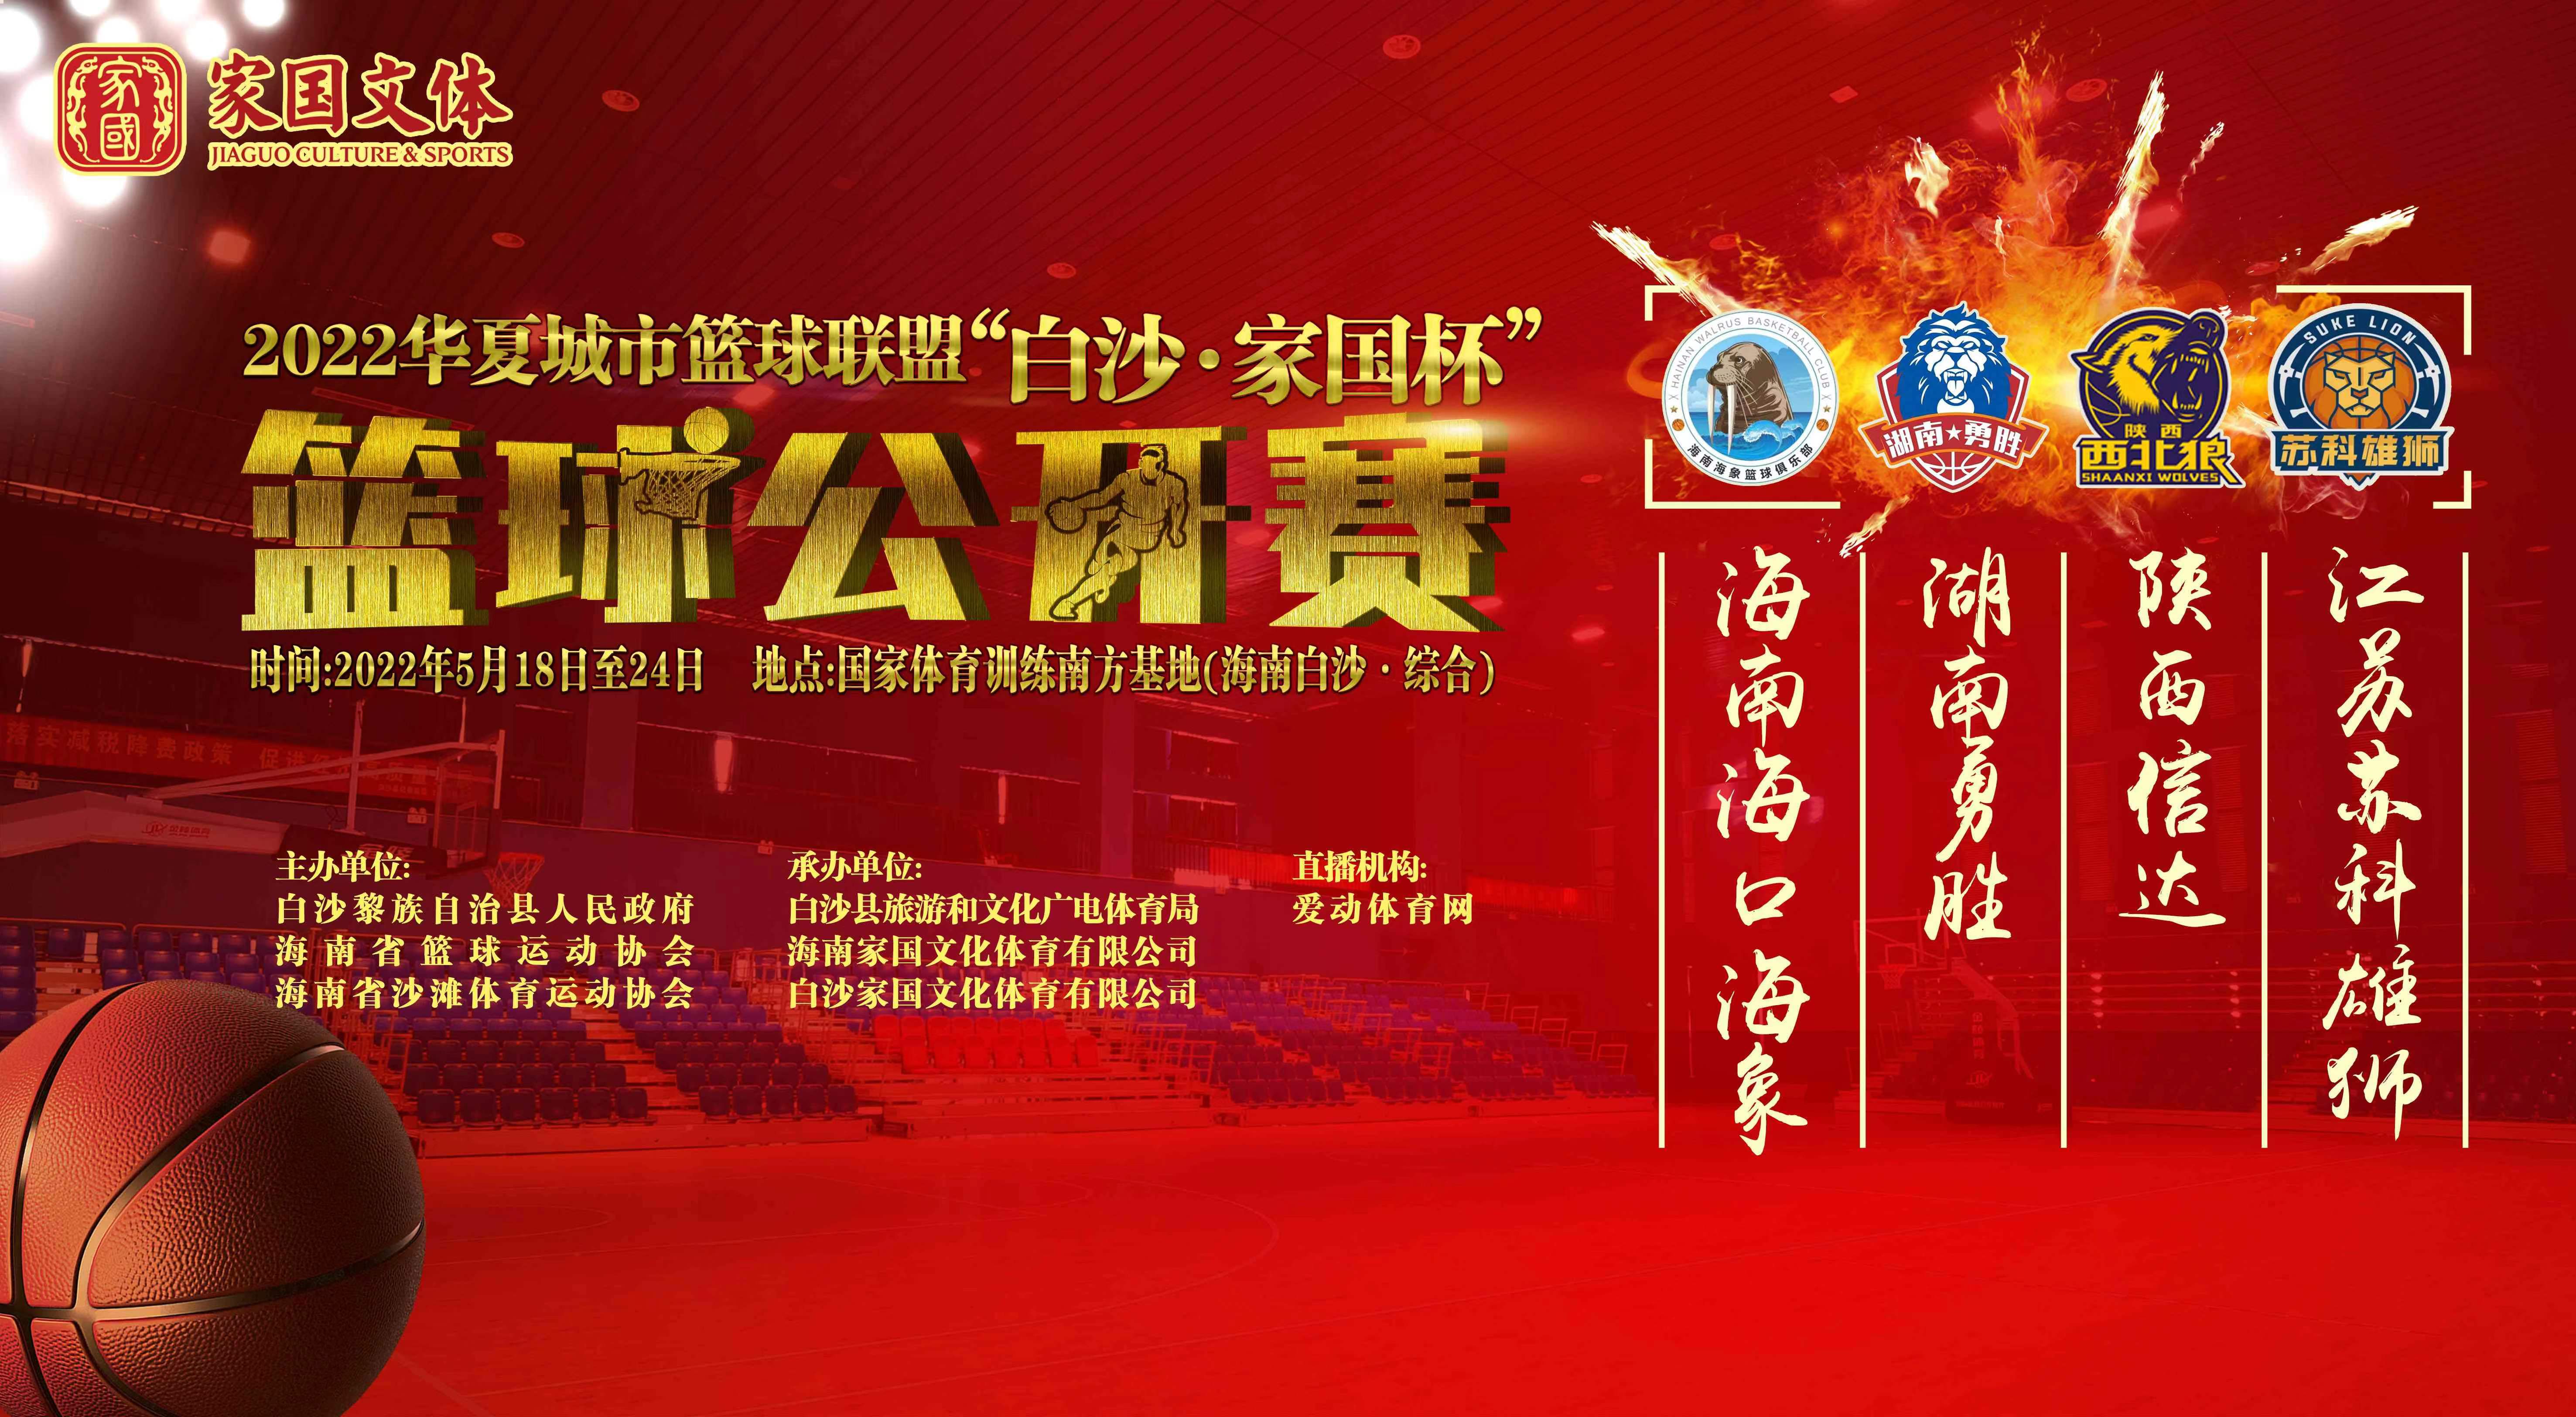 2022华夏城市篮球联盟“白沙·家国杯”篮球公开赛 5月18日